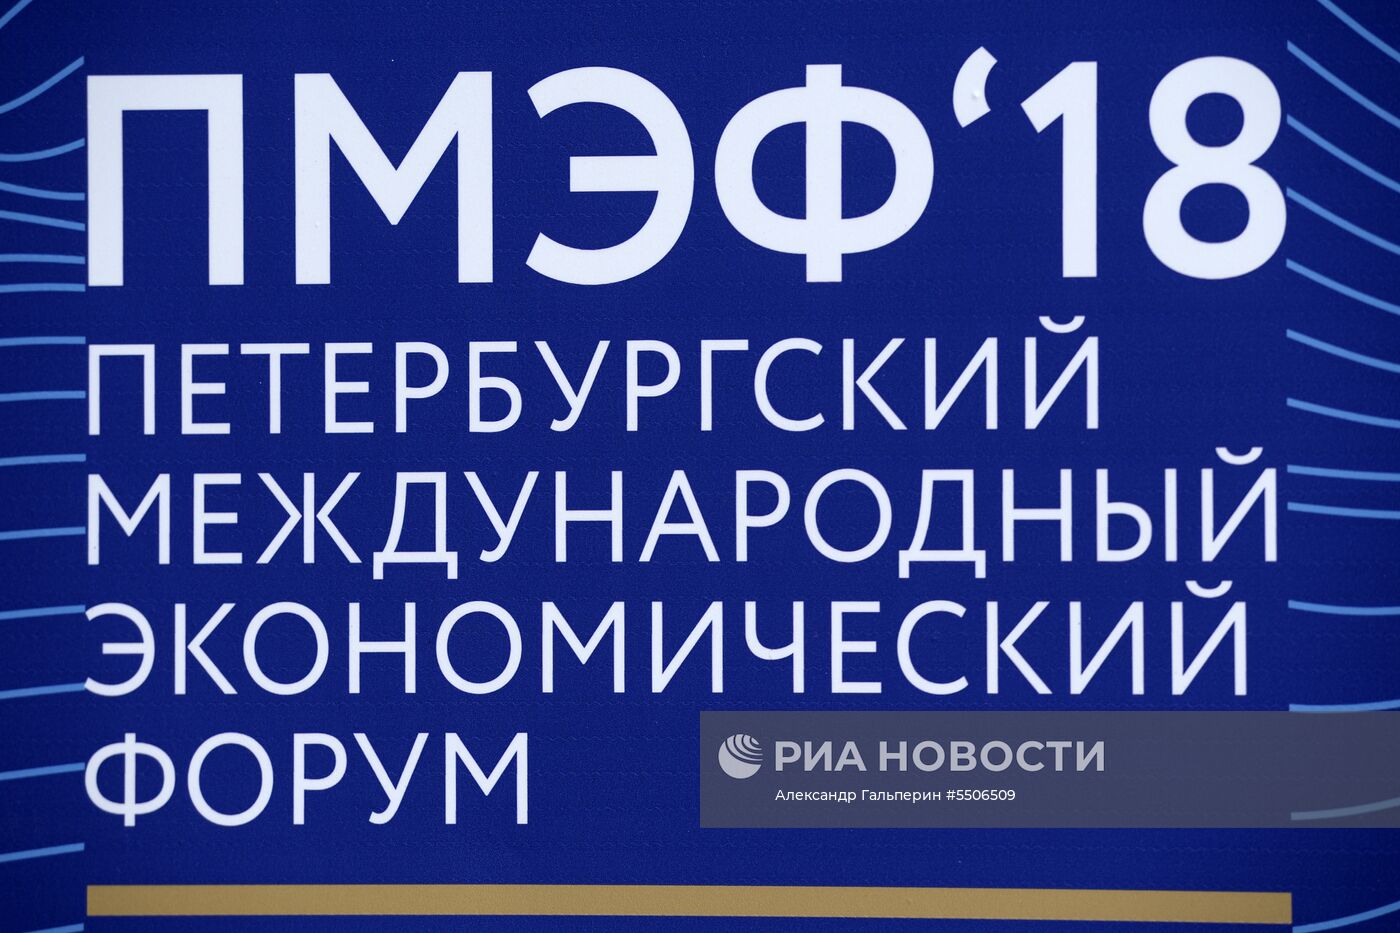 Подготовка к ПМЭФ-2018 в Санкт-Петербурге